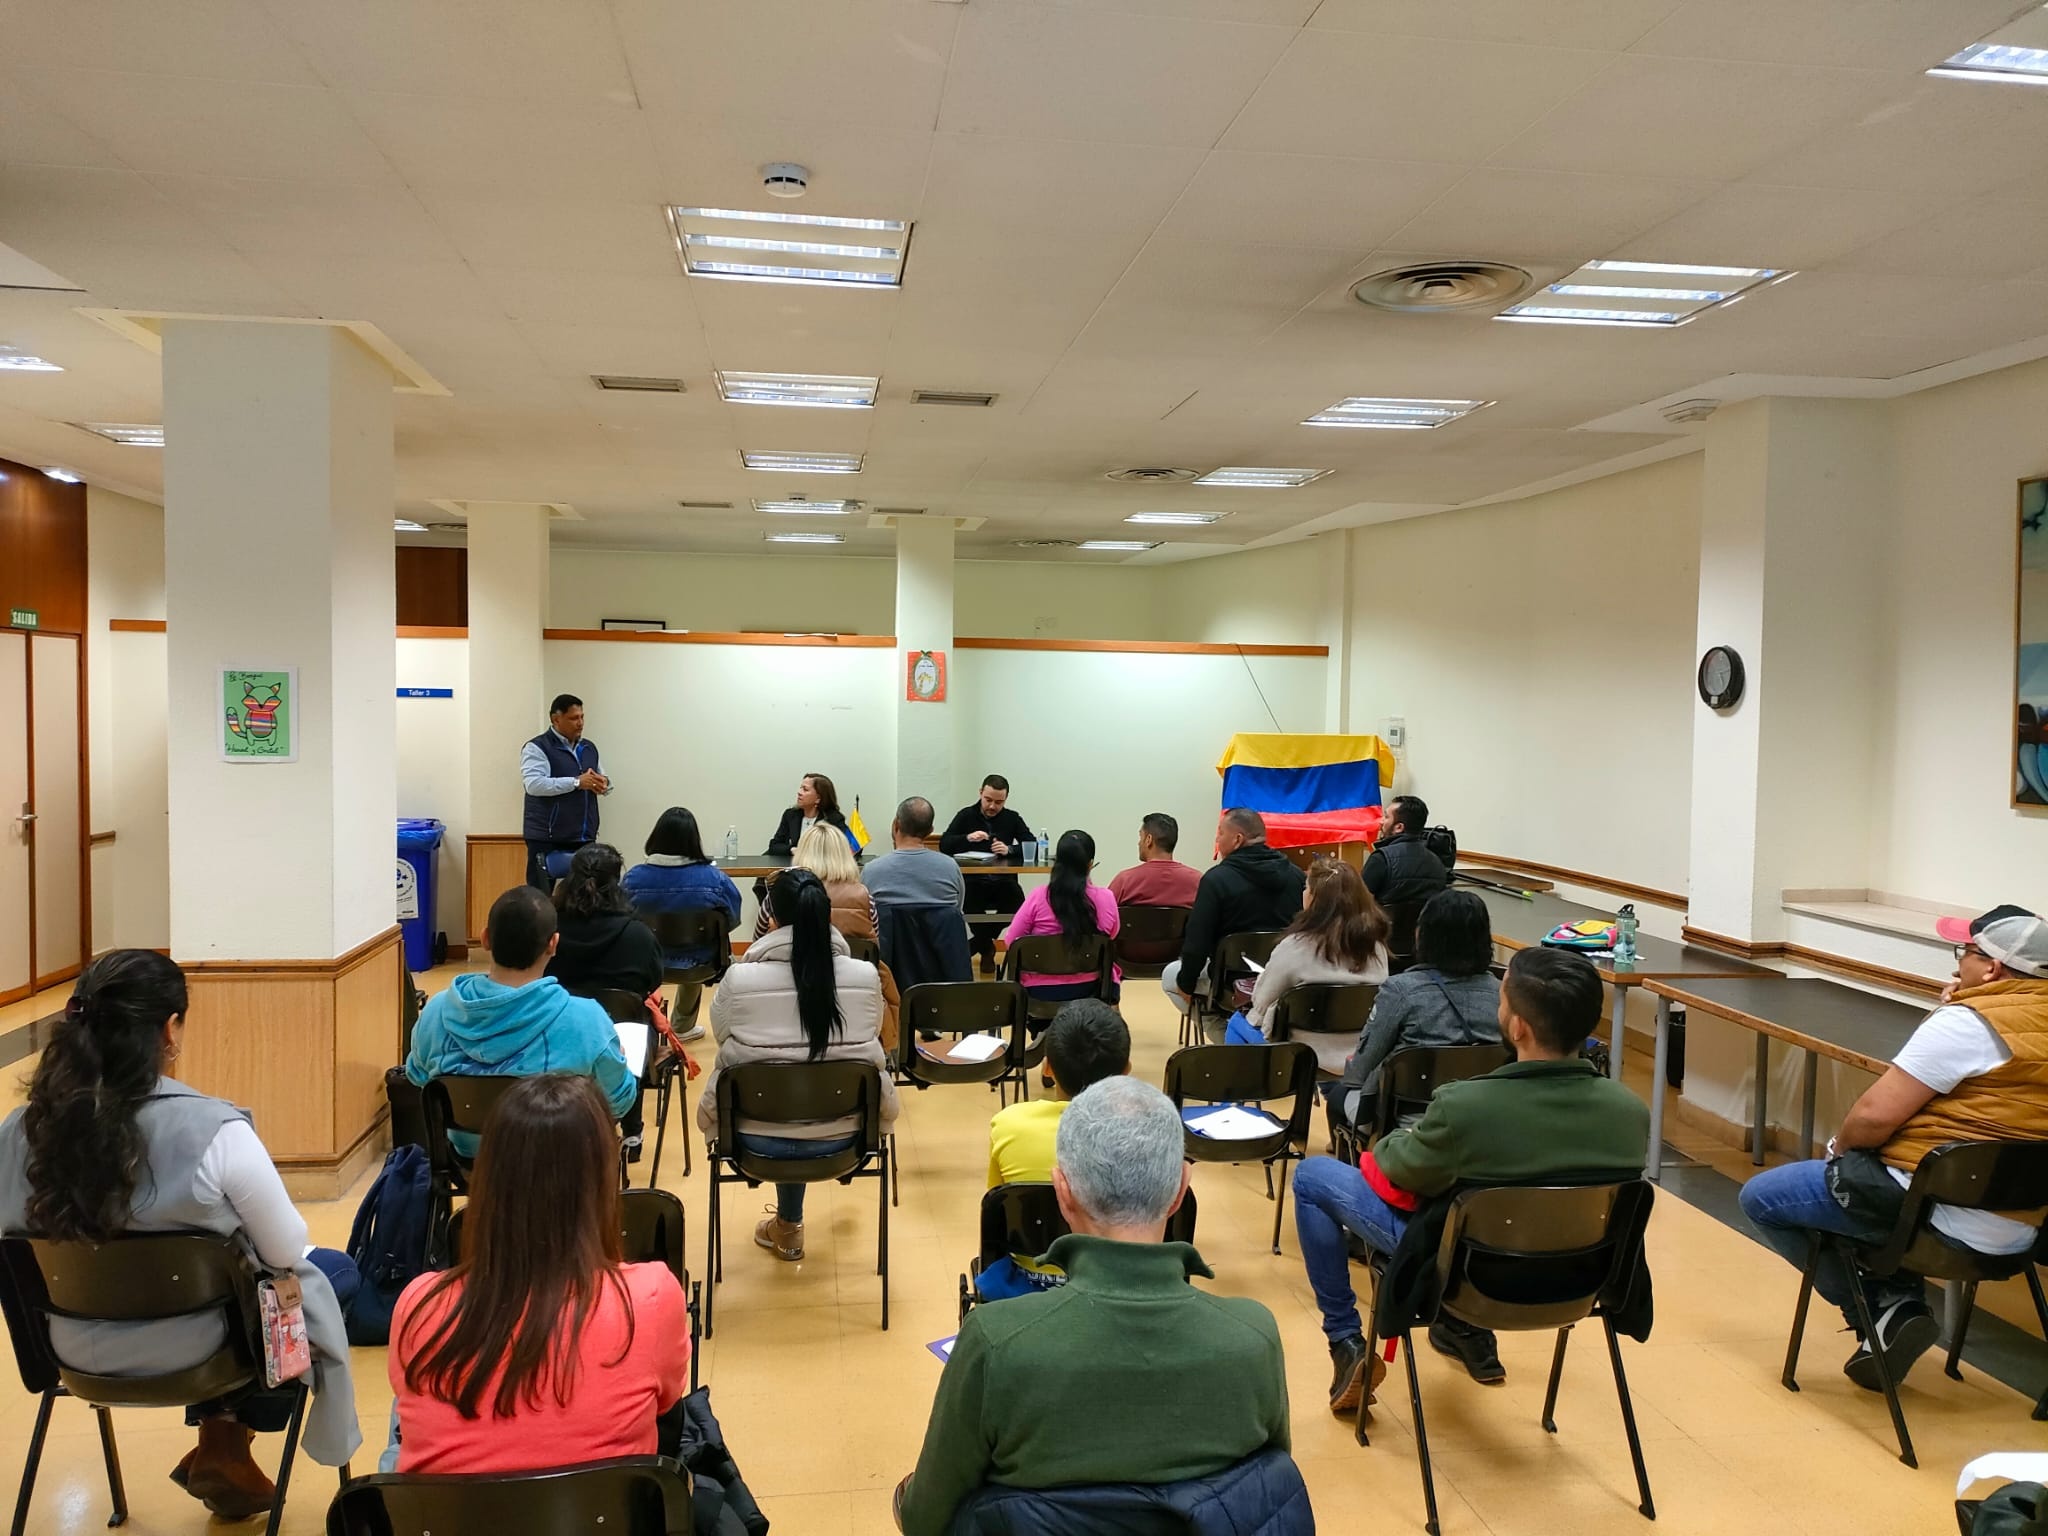 Consulado de Colombia en Bilbao realizó encuentro comunitario en el Principado de Asturias, en la ciudad de Oviedo